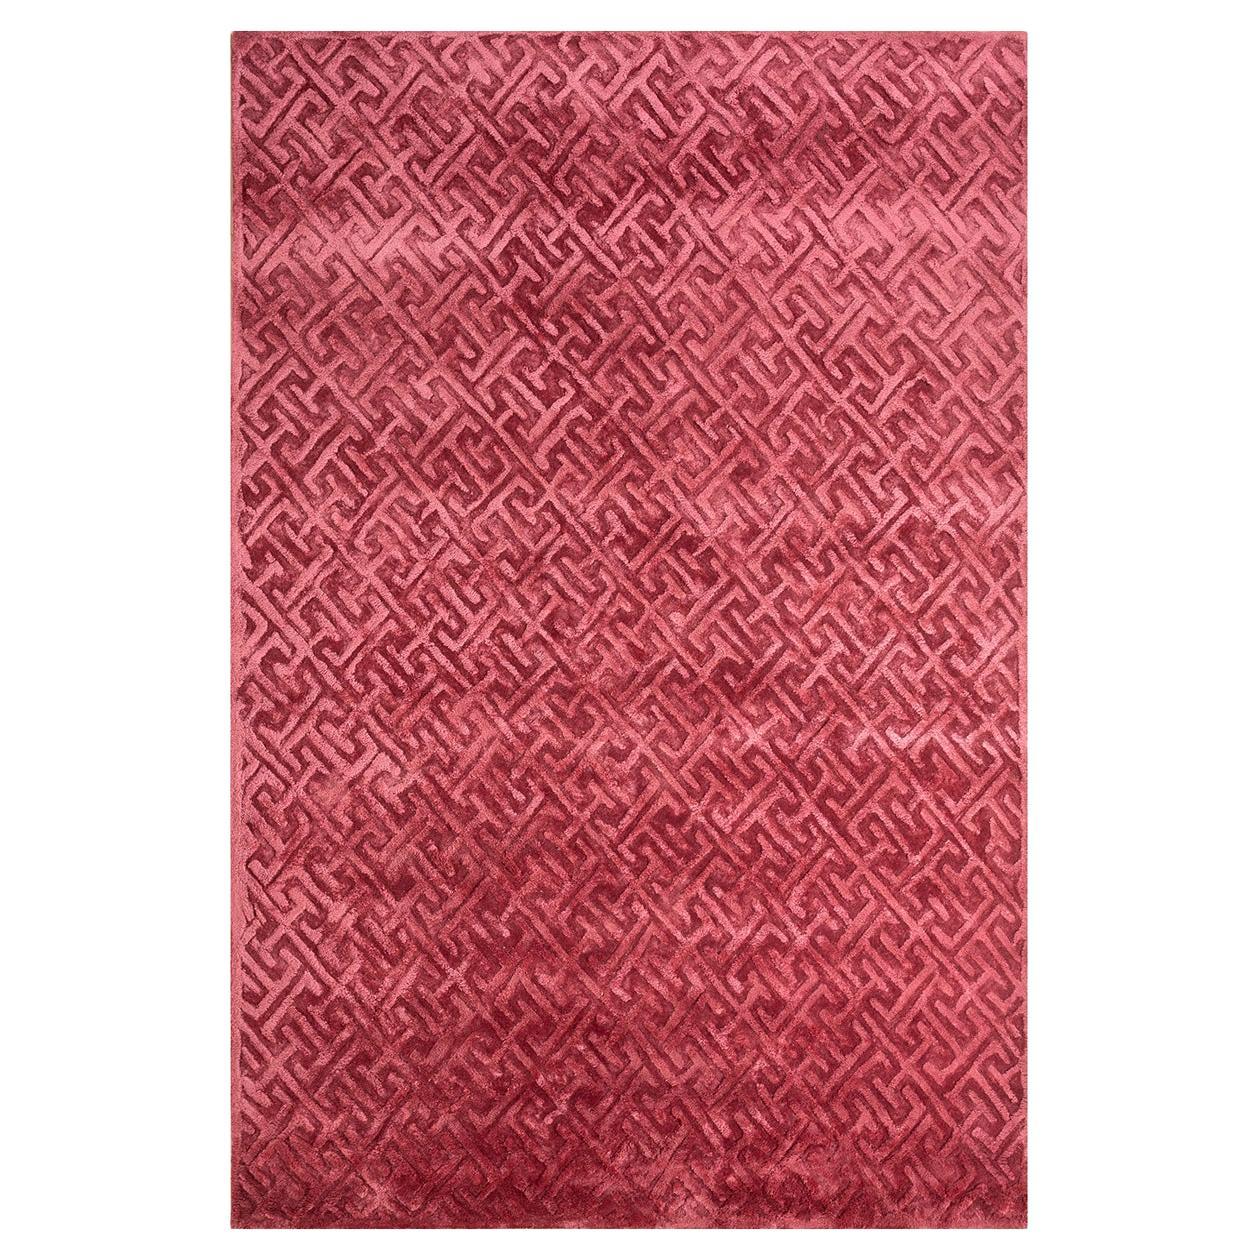 Angled Teppich von Rural Weavers, getuftet, Wolle, Viskose, 180x270cm